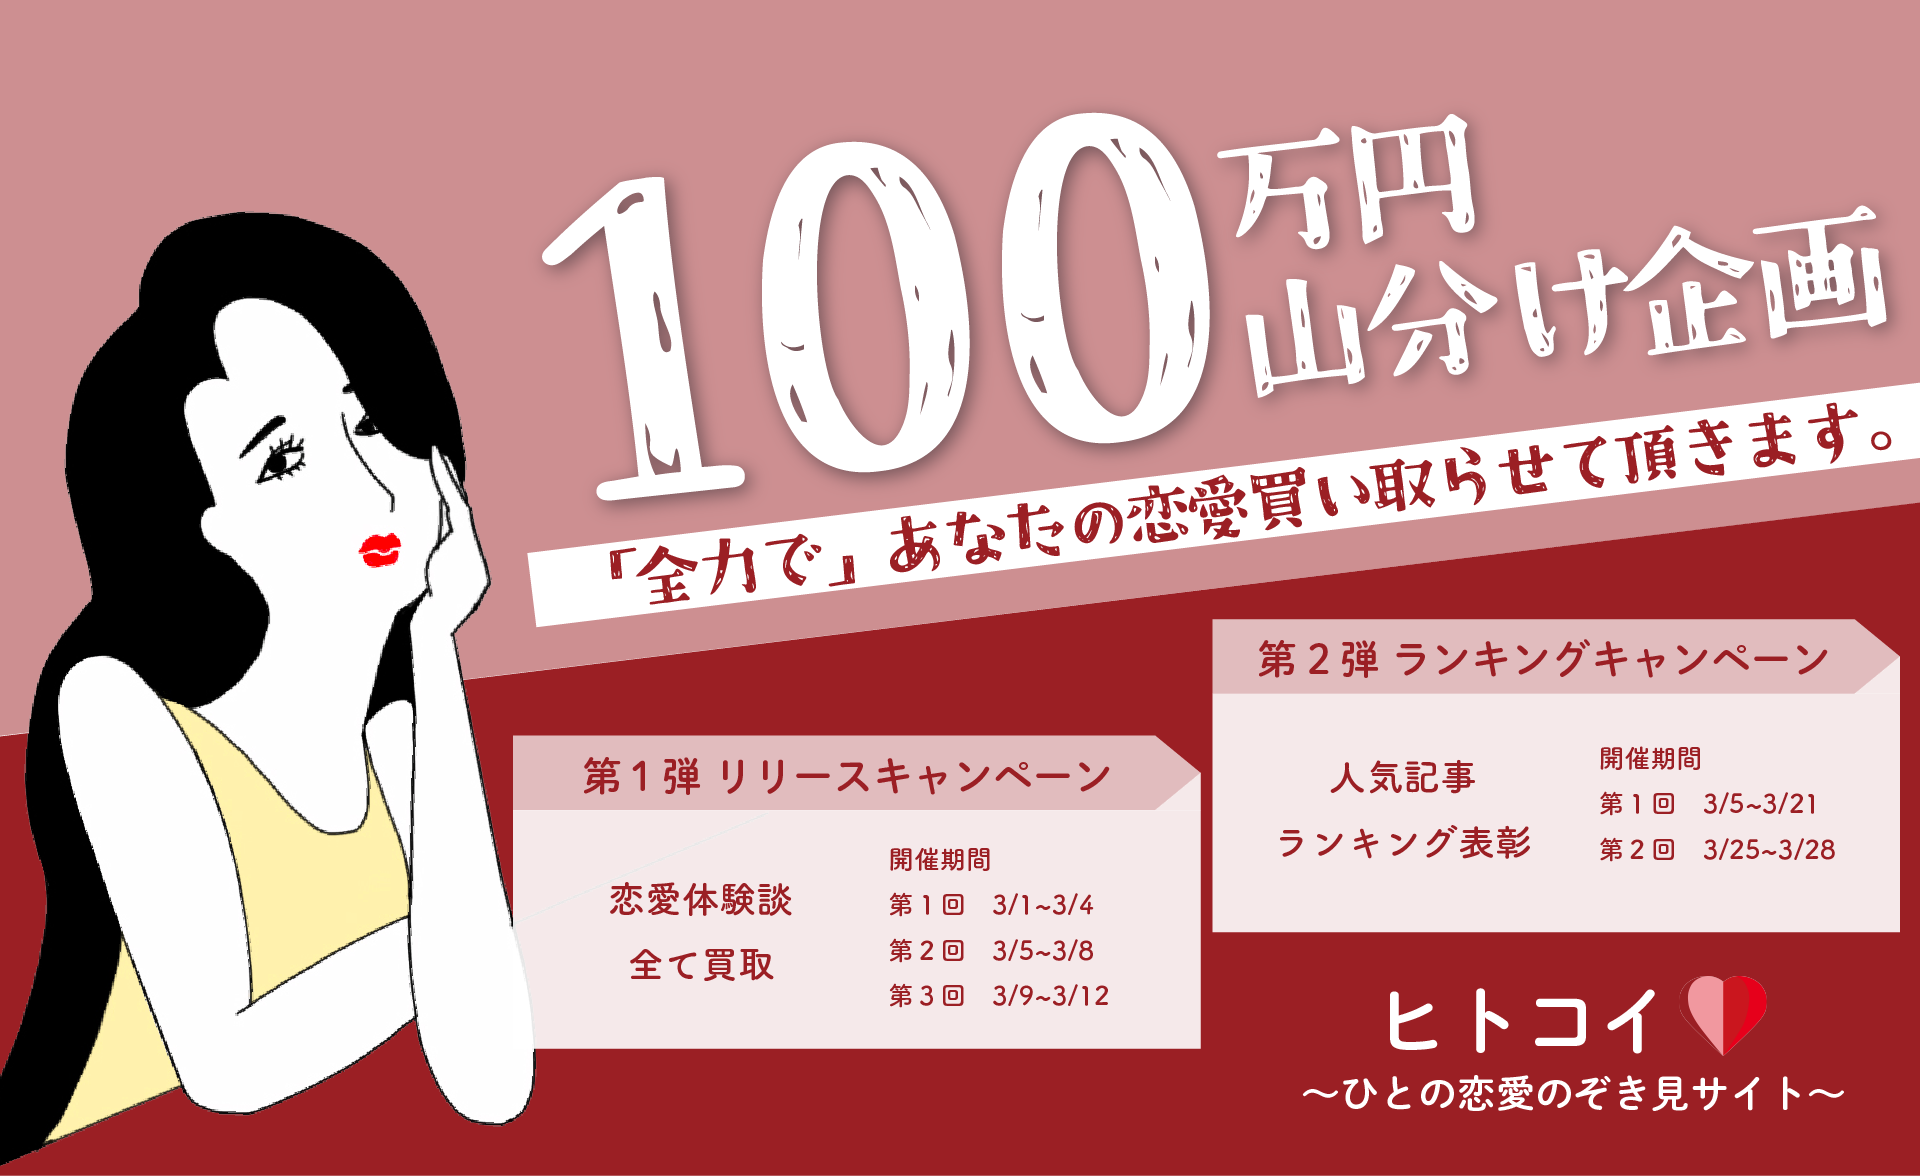 【ヒトコイ】100万円山分けキャンペーン